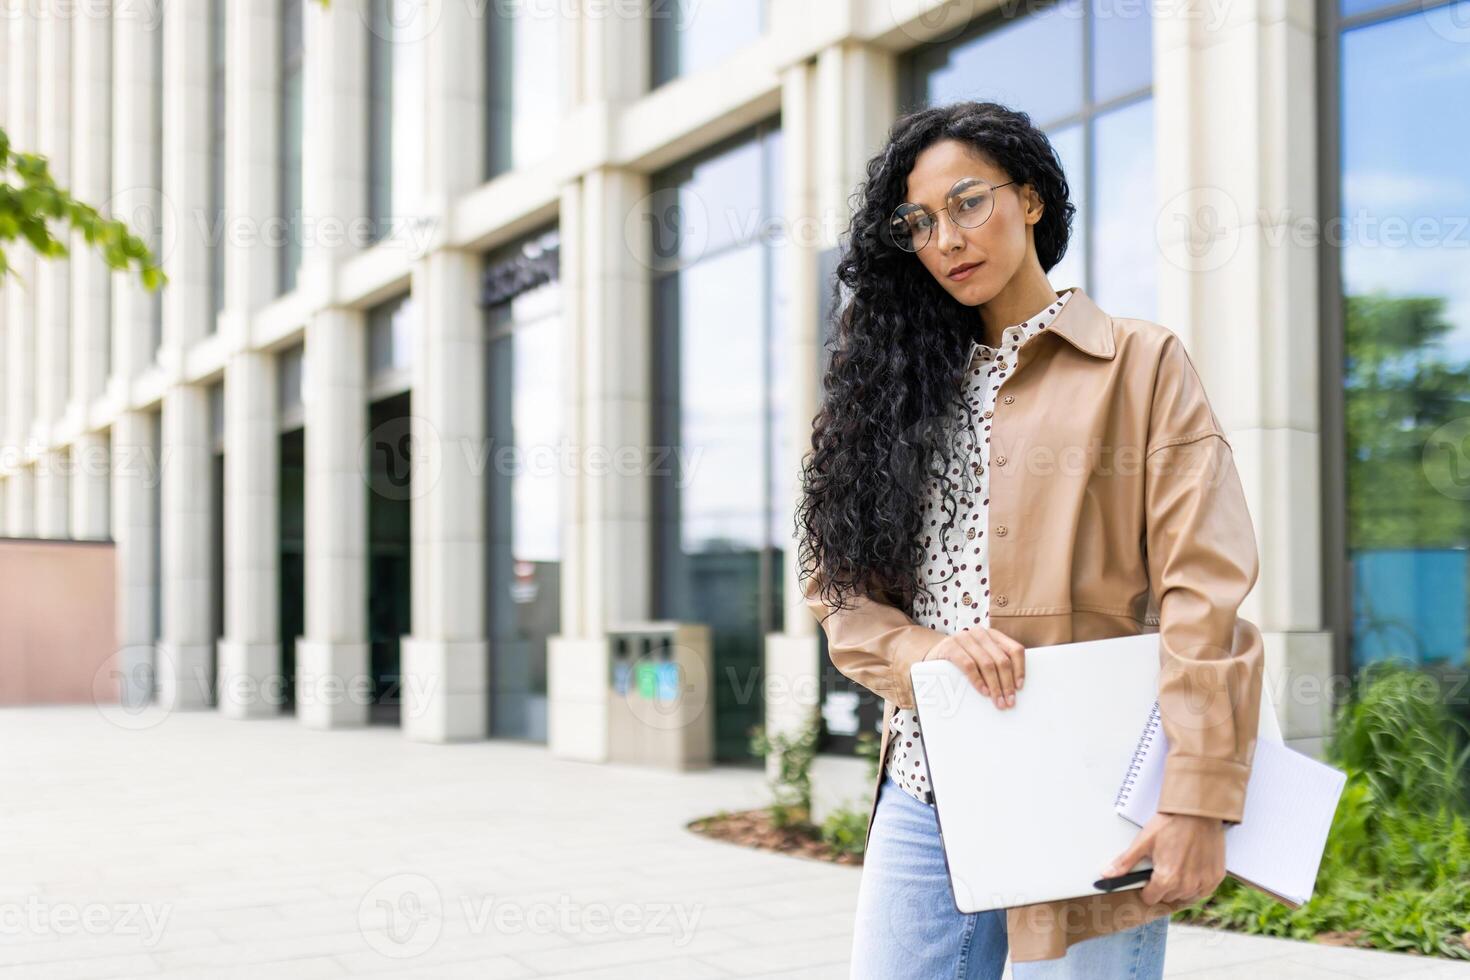 självsäker ung affärskvinna med bärbar dator och anteckningsbok stående i främre av ett kontor byggnad, utsöndrar professionalism och ambition. foto